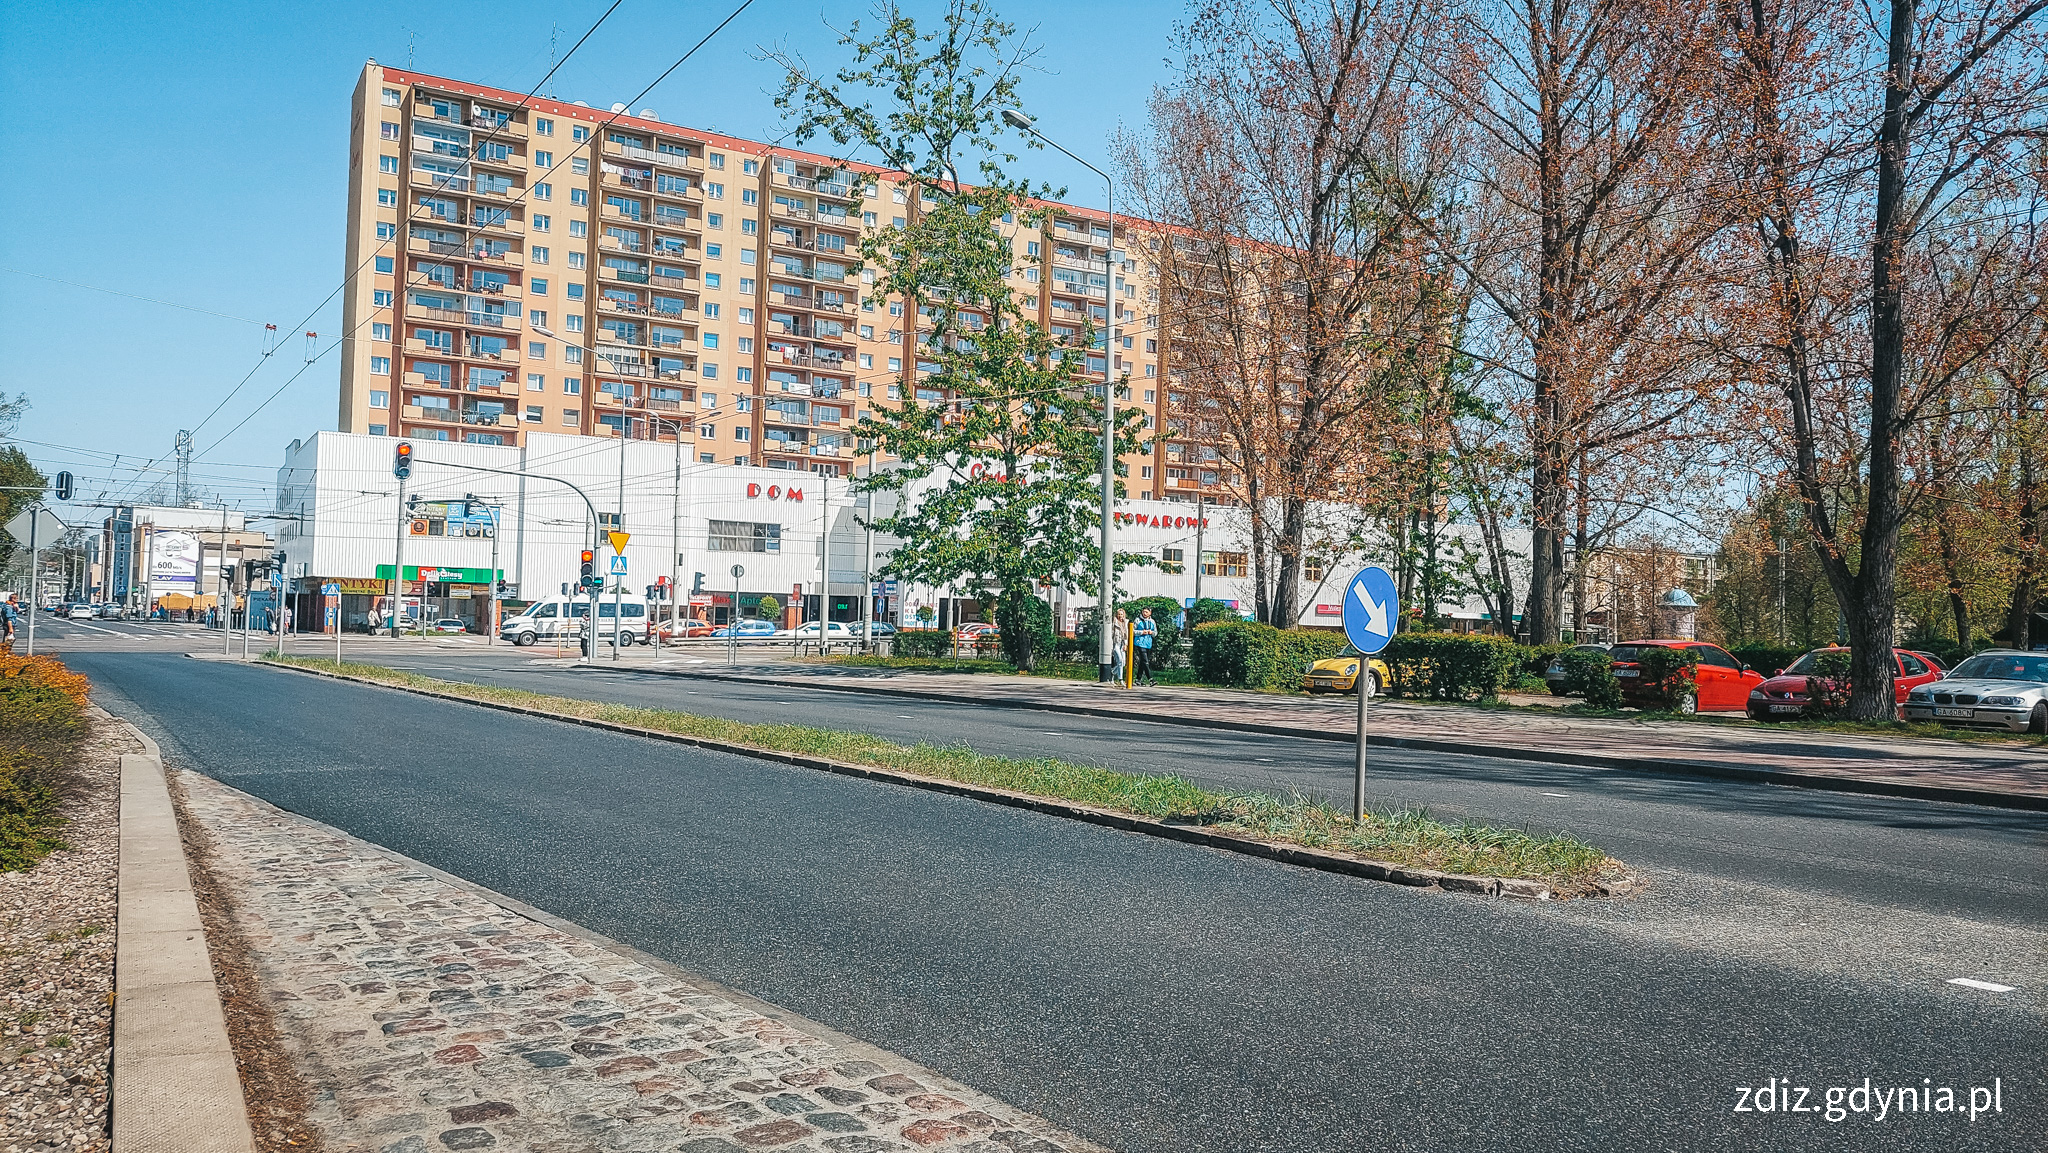 Nowa nawierzchnia na ul. Kartuskiej, widoczny nowy asfalt, droga, budynki